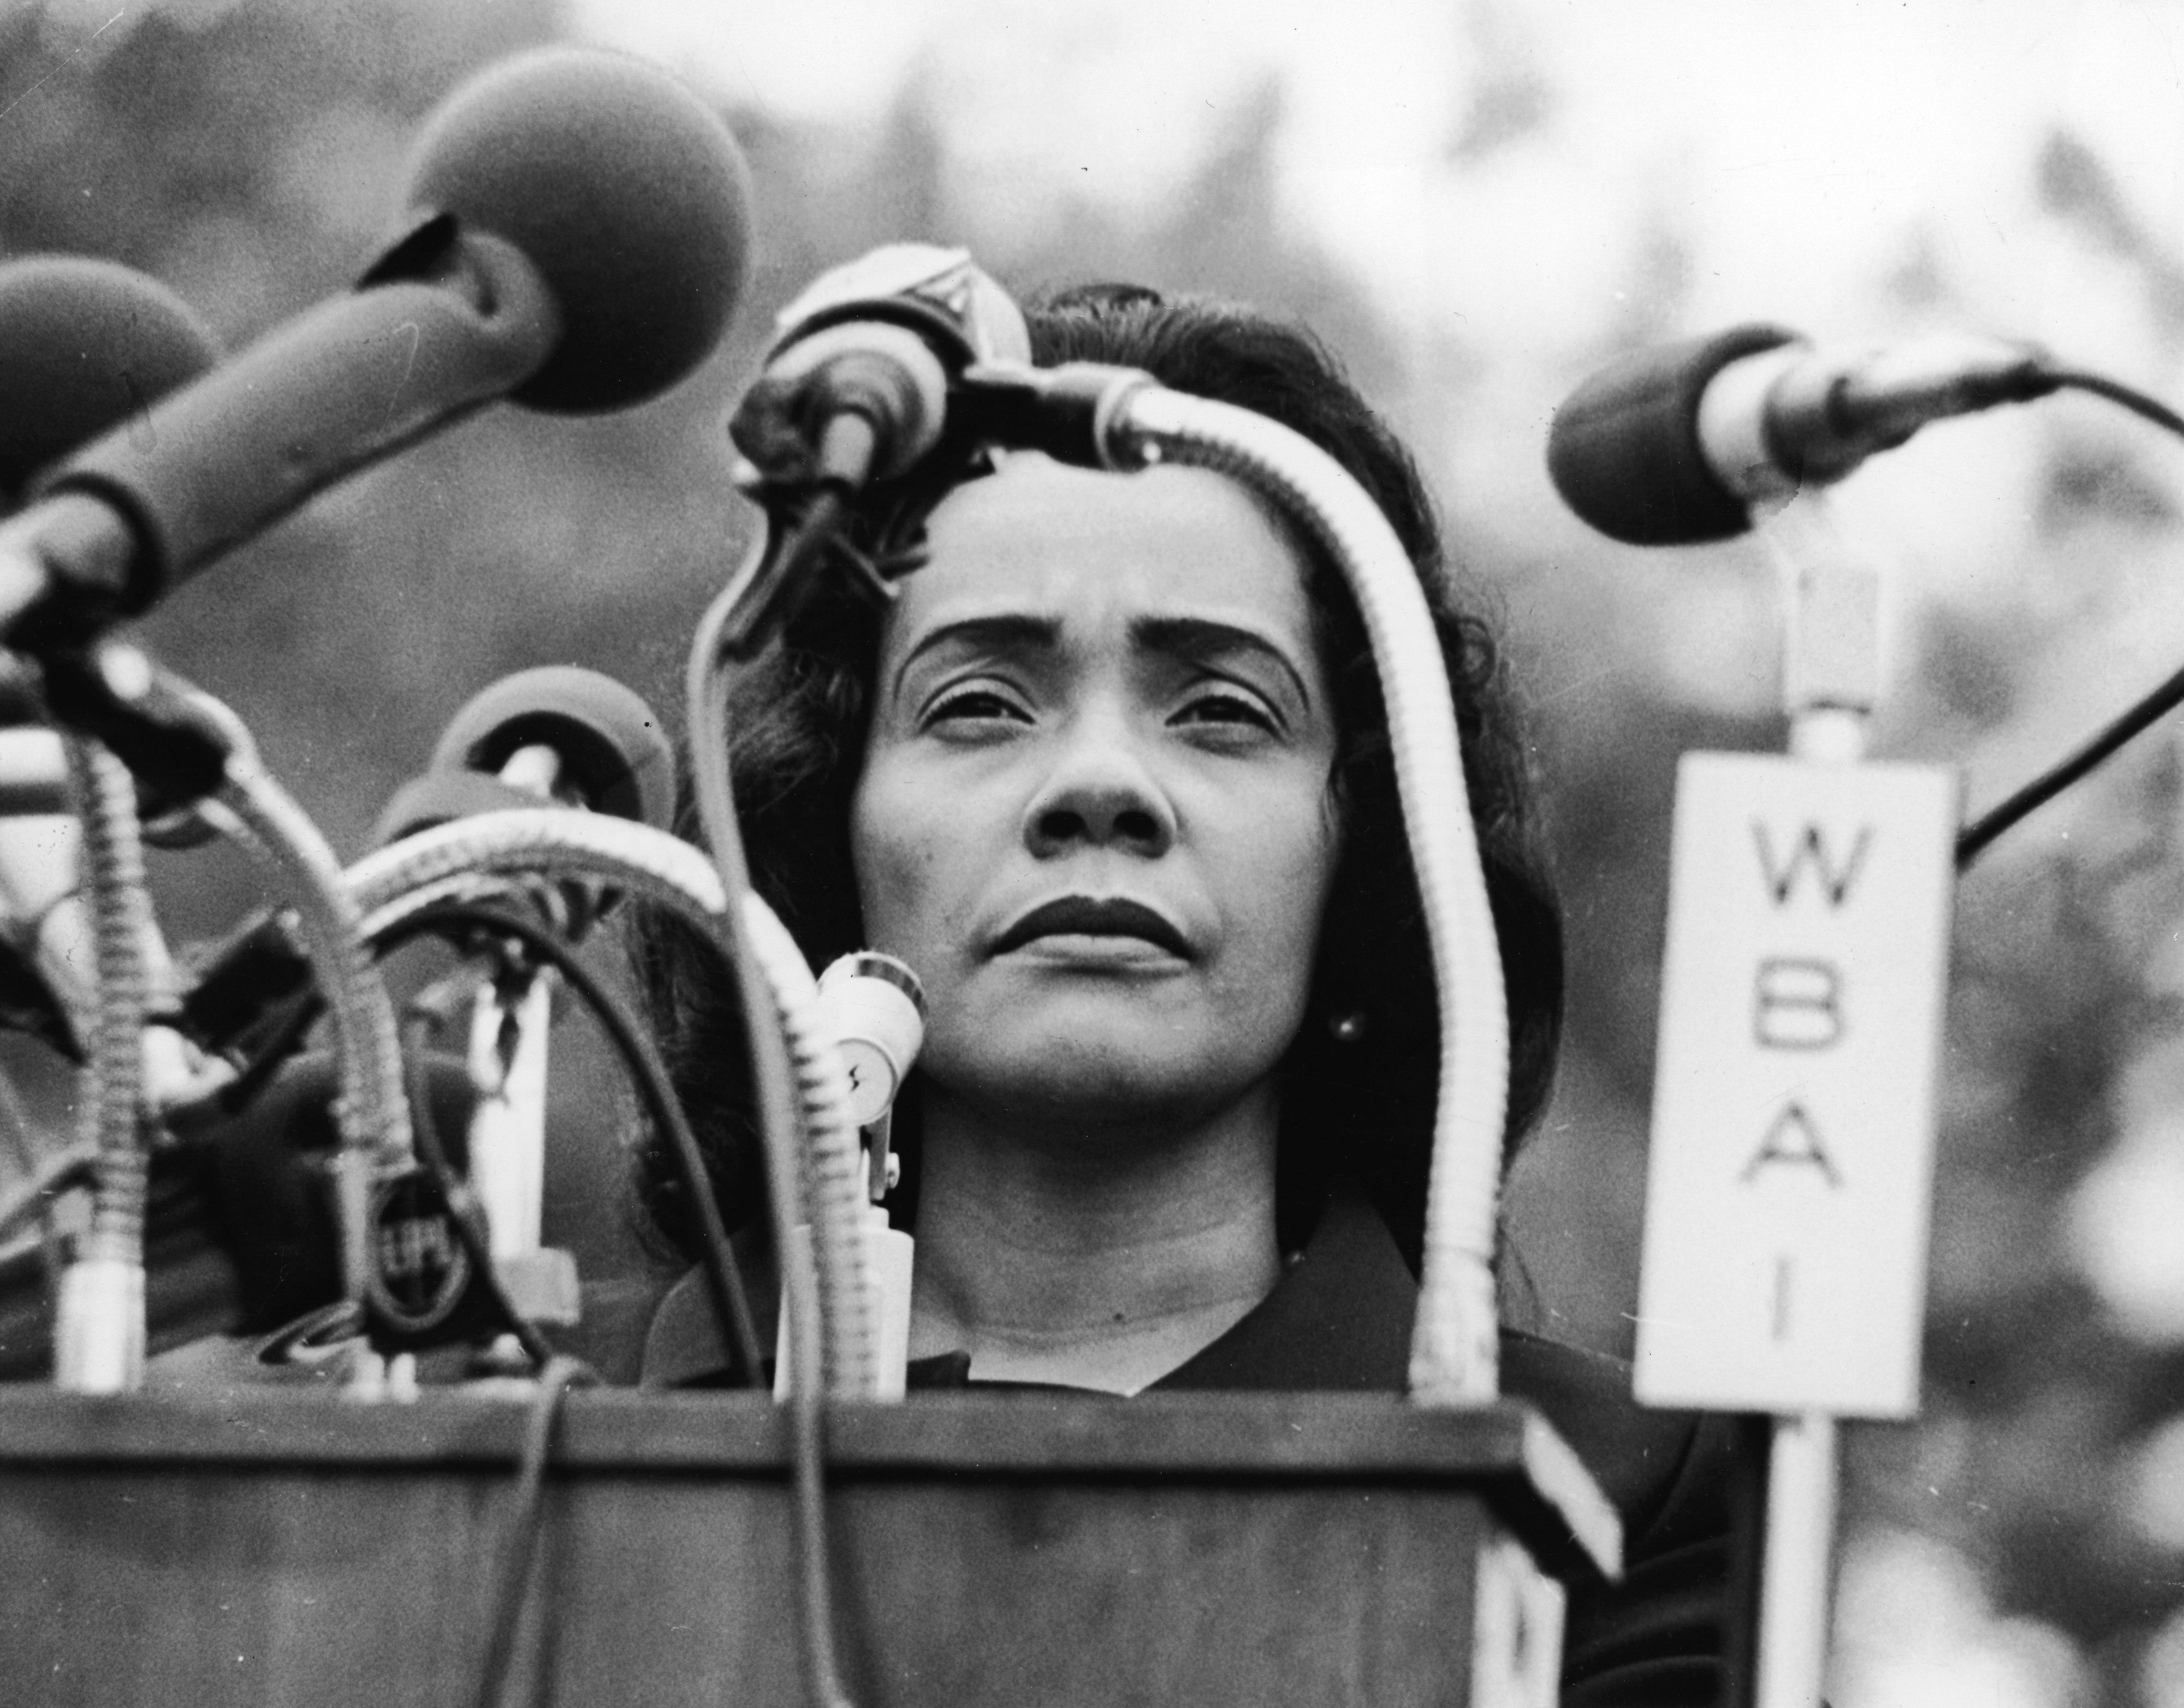 Feminist Plush Coretta Scott King